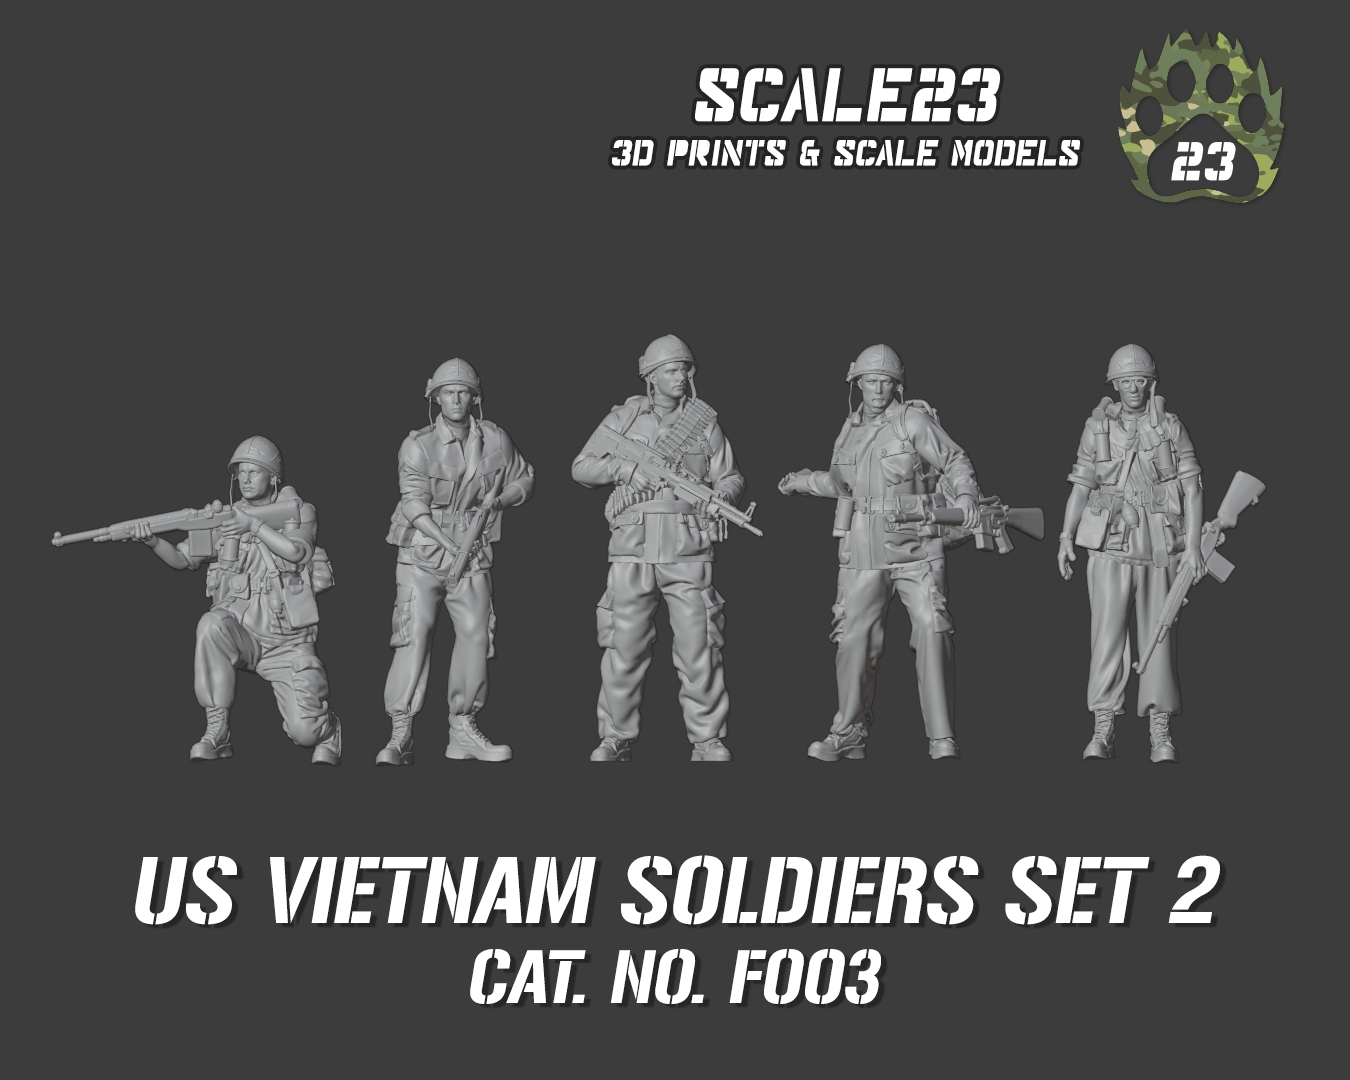 U.S. Vietnam soldiers - set 2